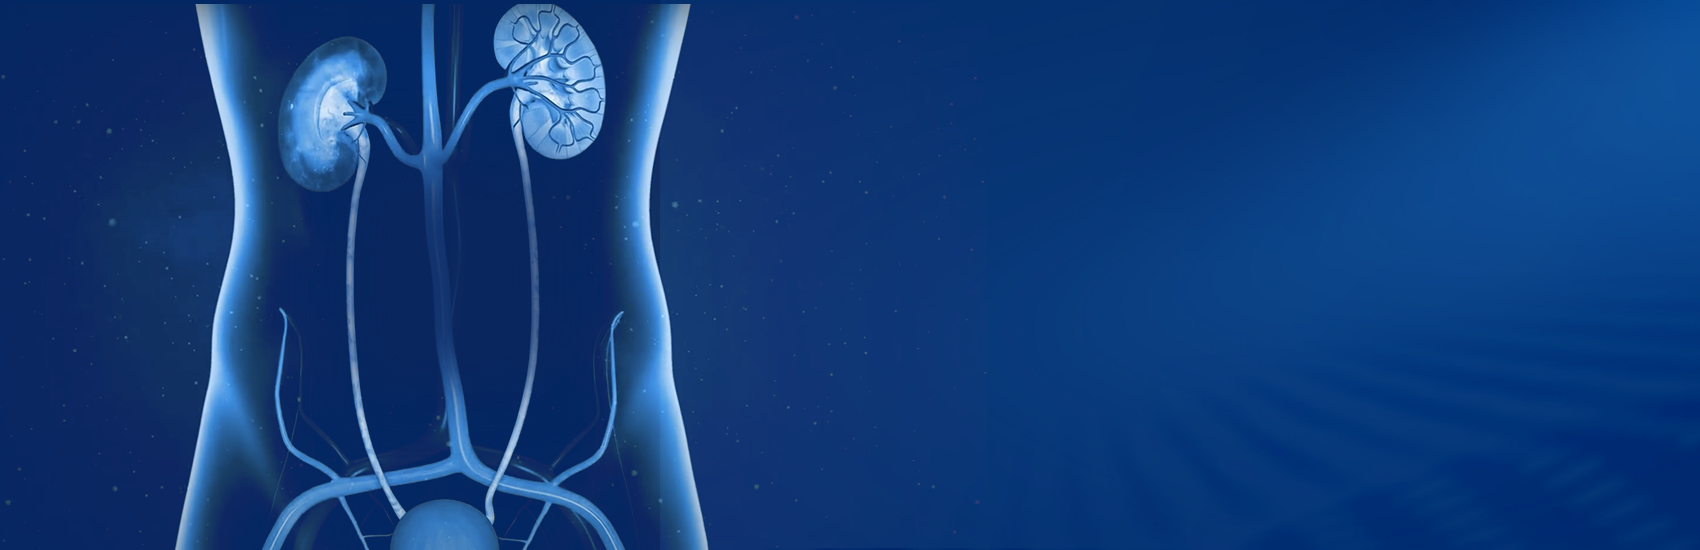 Ilustración azul de órganos corporales, centrada en los riñones. 